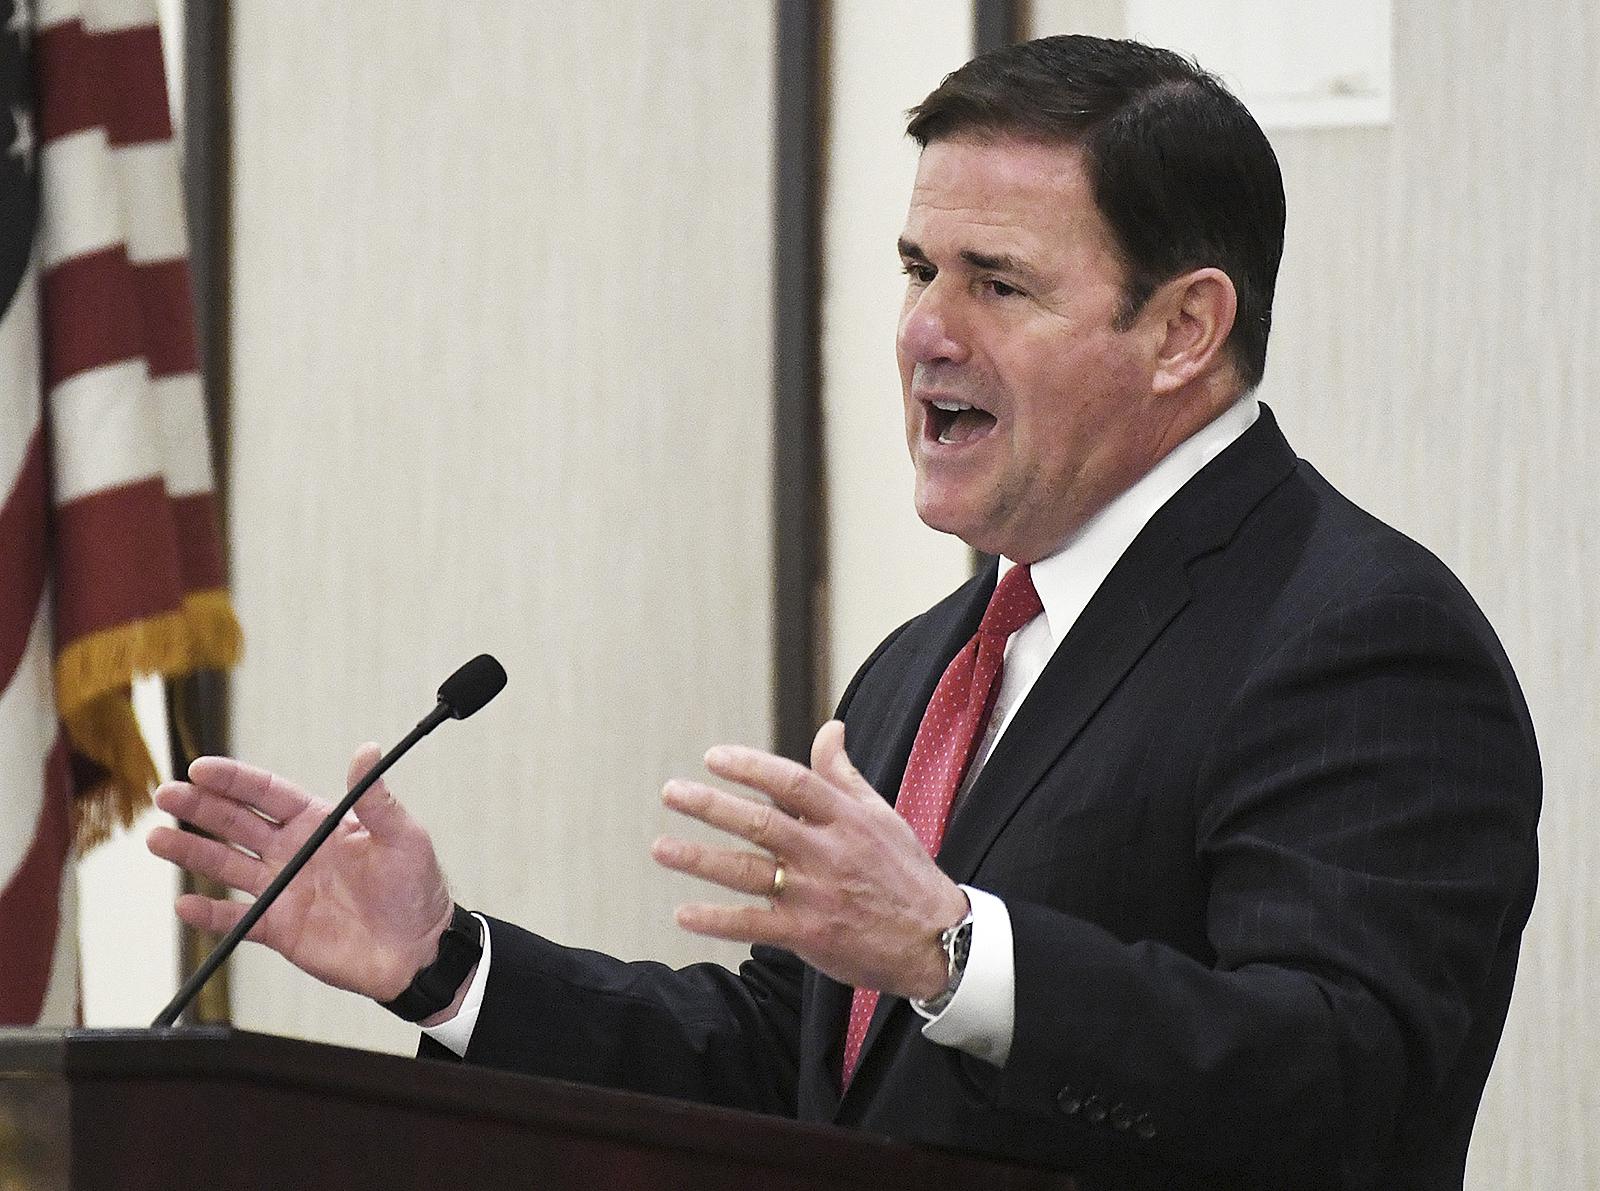 El gobernador de Arizona Ducey no se presenta al Senado, lo que supone un golpe para el reclutamiento del GOP